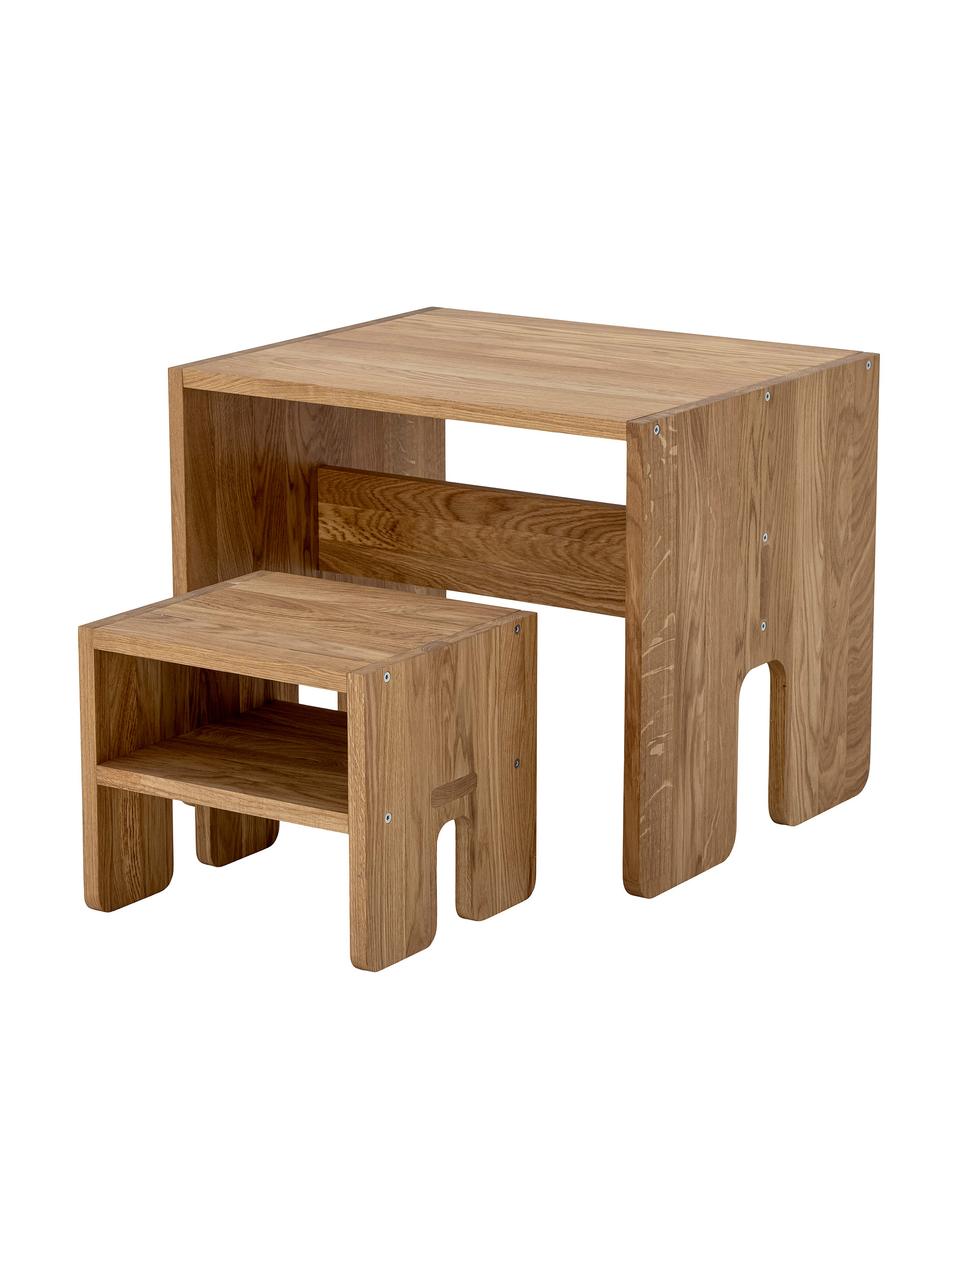 Dětský stůl z dubového dřeva Bas, Dubové dřevo, Dubové dřevo, Š 60 cm, H 50 cm